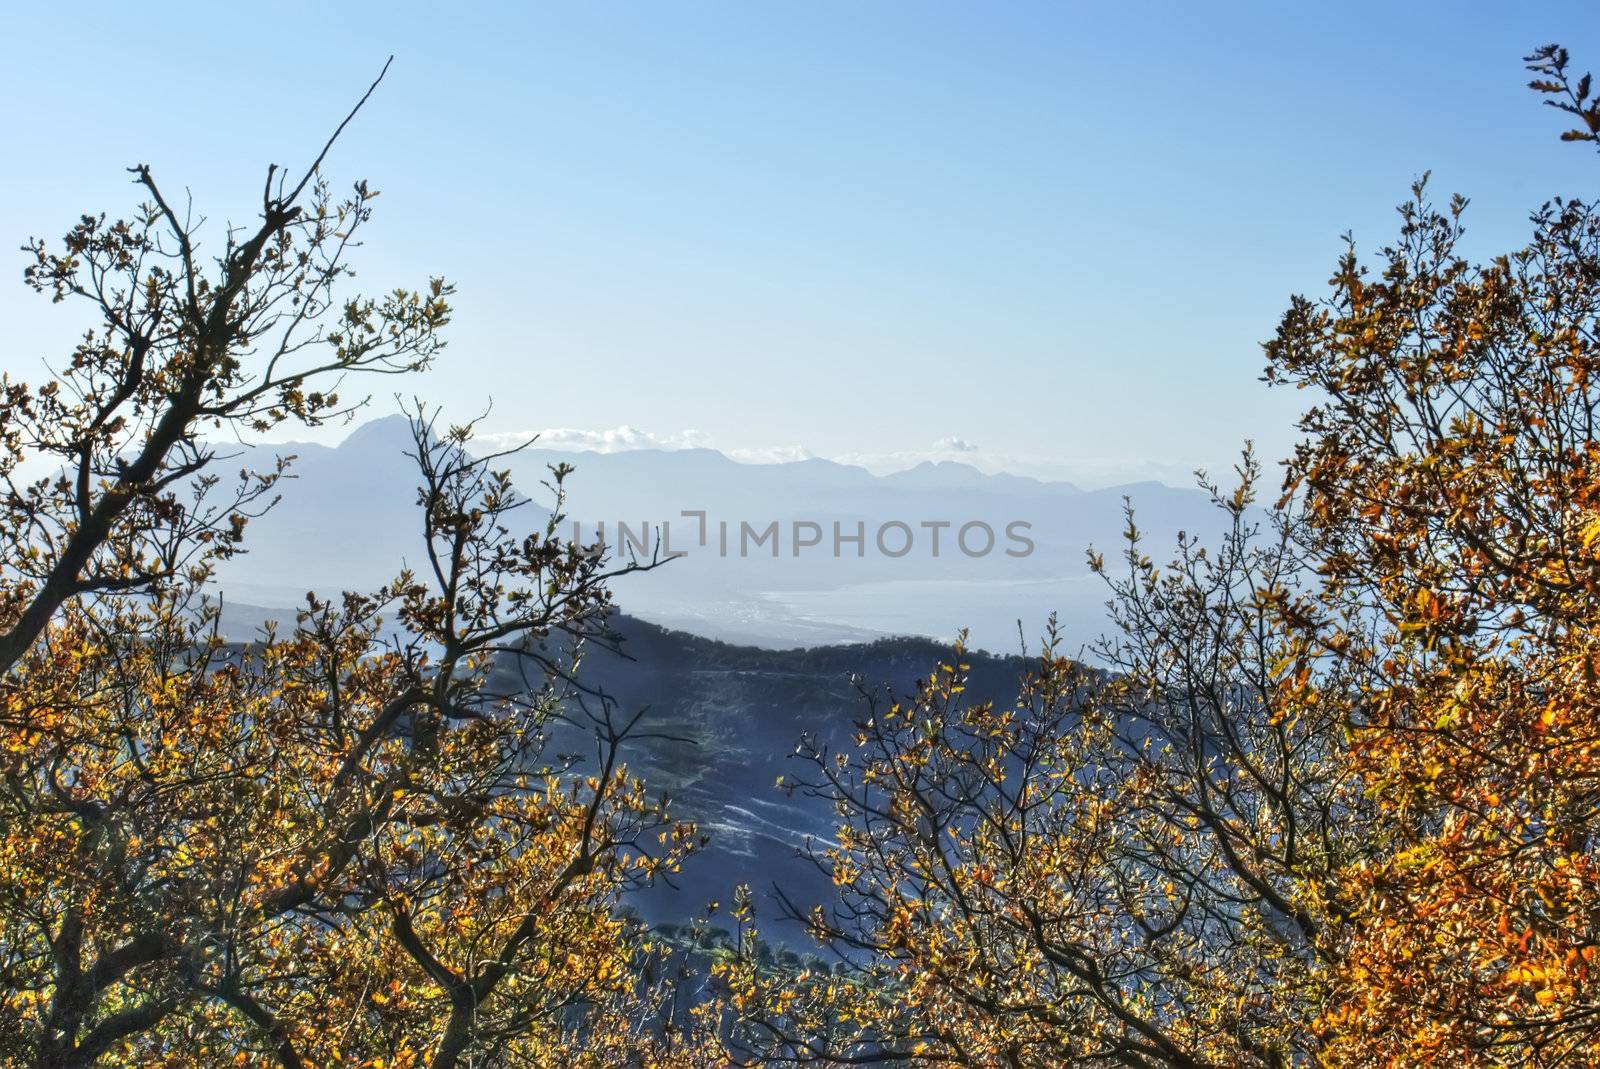 View from Gibilmanna in the hdr by gandolfocannatella